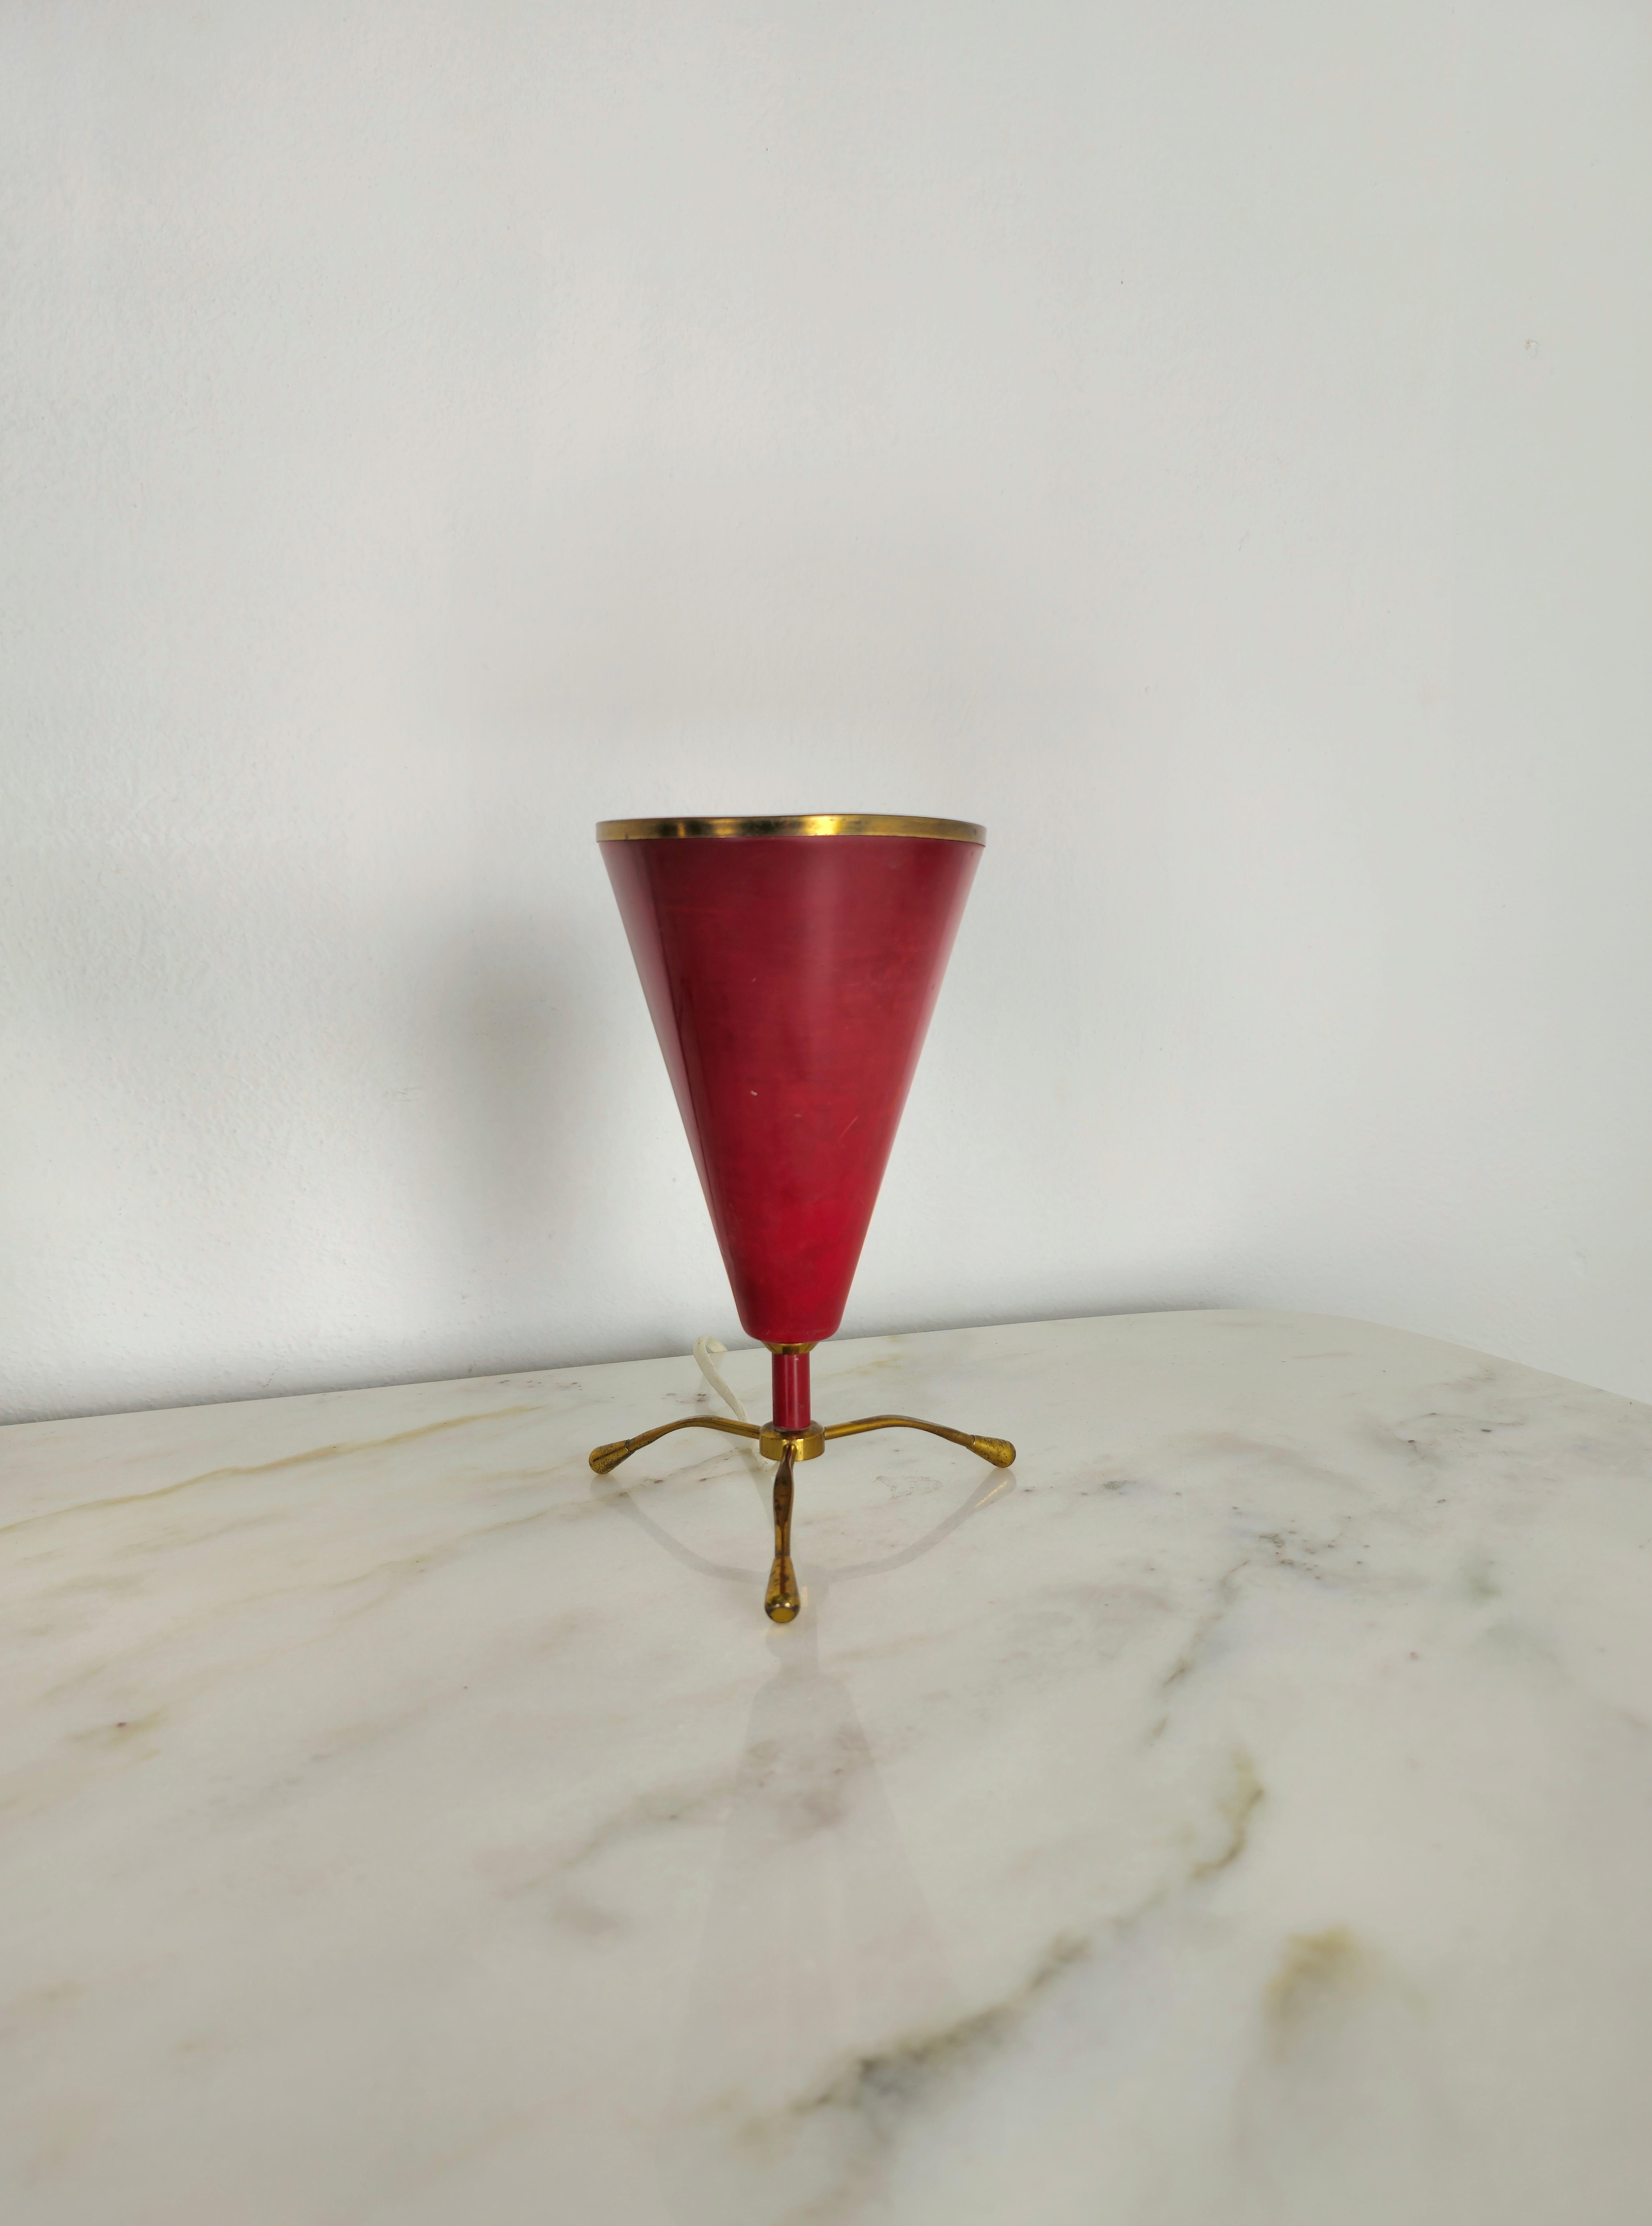 Lampe de table attribuable à Arredoluce, produite en Italie dans les années 1950.
Lampe de table E14 à une seule lumière avec diffuseur conique en aluminium laqué rouge, bordure et 3 pieds en laiton.



Note : Nous essayons d'offrir à nos clients un